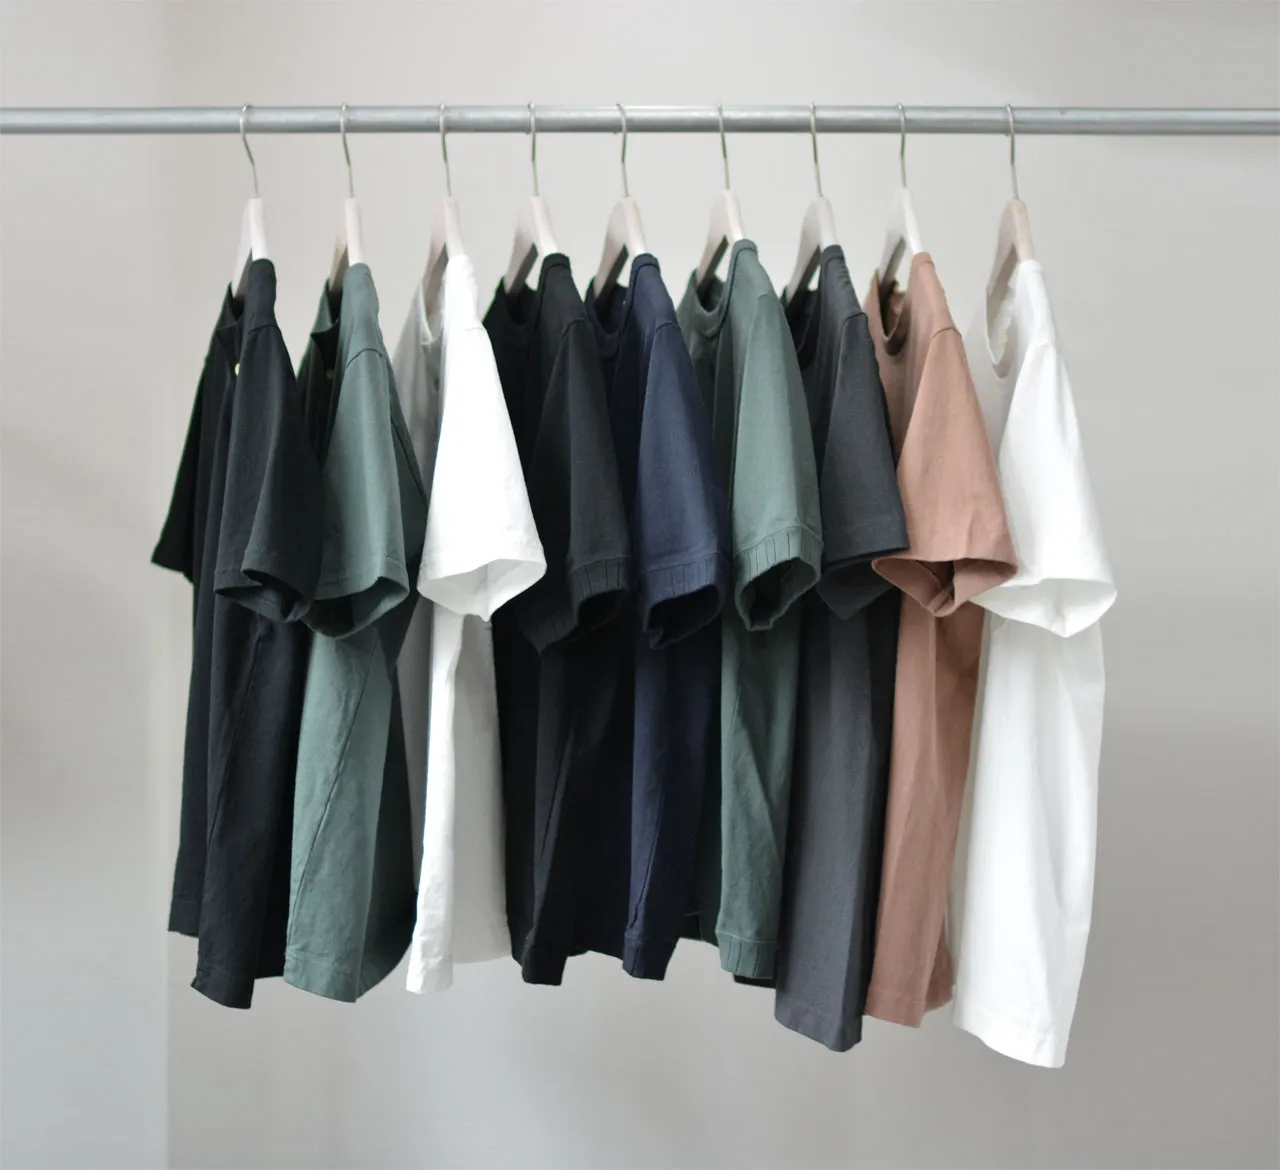 Bảo quản áo thun đúng cách sẽ giúp áo lâu bền, không bị giãn áo.